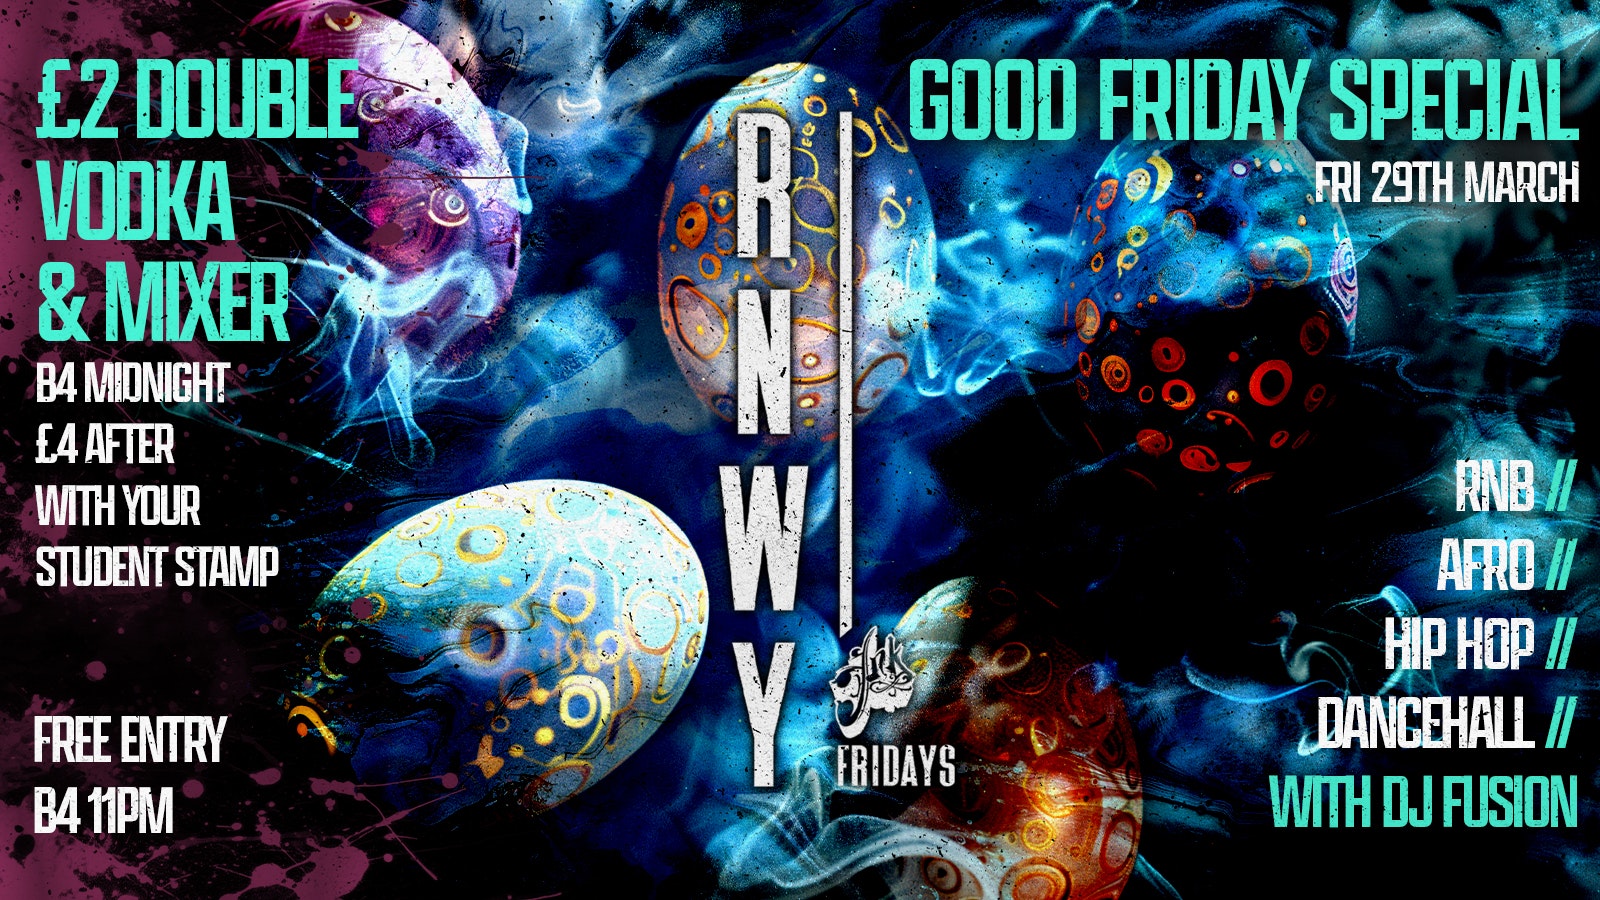 Runway Fridays : Good Friday Special